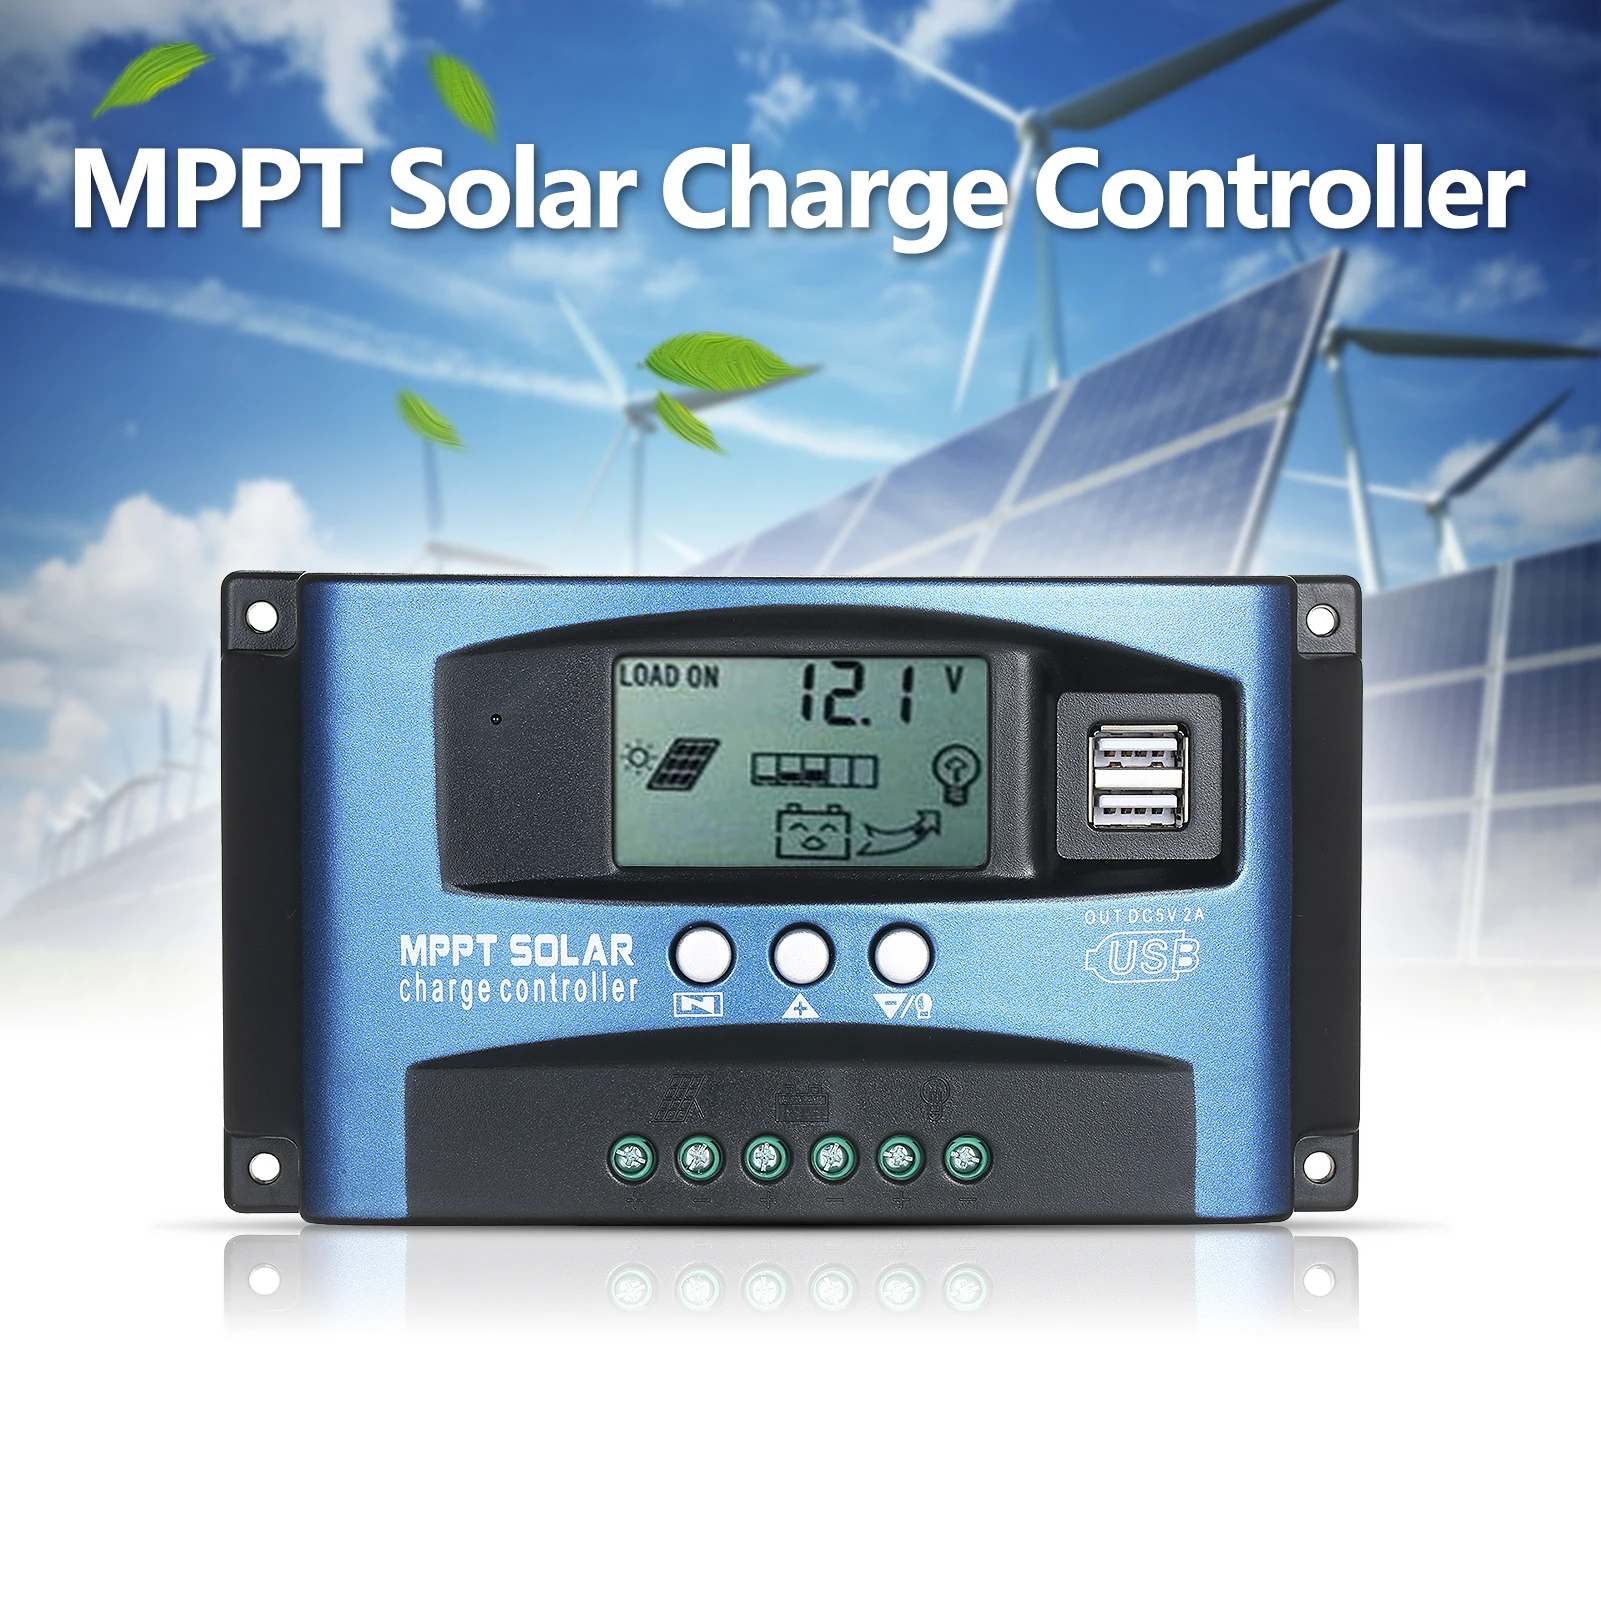 

Контроллер заряда солнечной батареи MPPT с двумя USB-портами, контроллер солнечной батареи с умным ЖК-экраном, контроллер слежения за точкой ма...